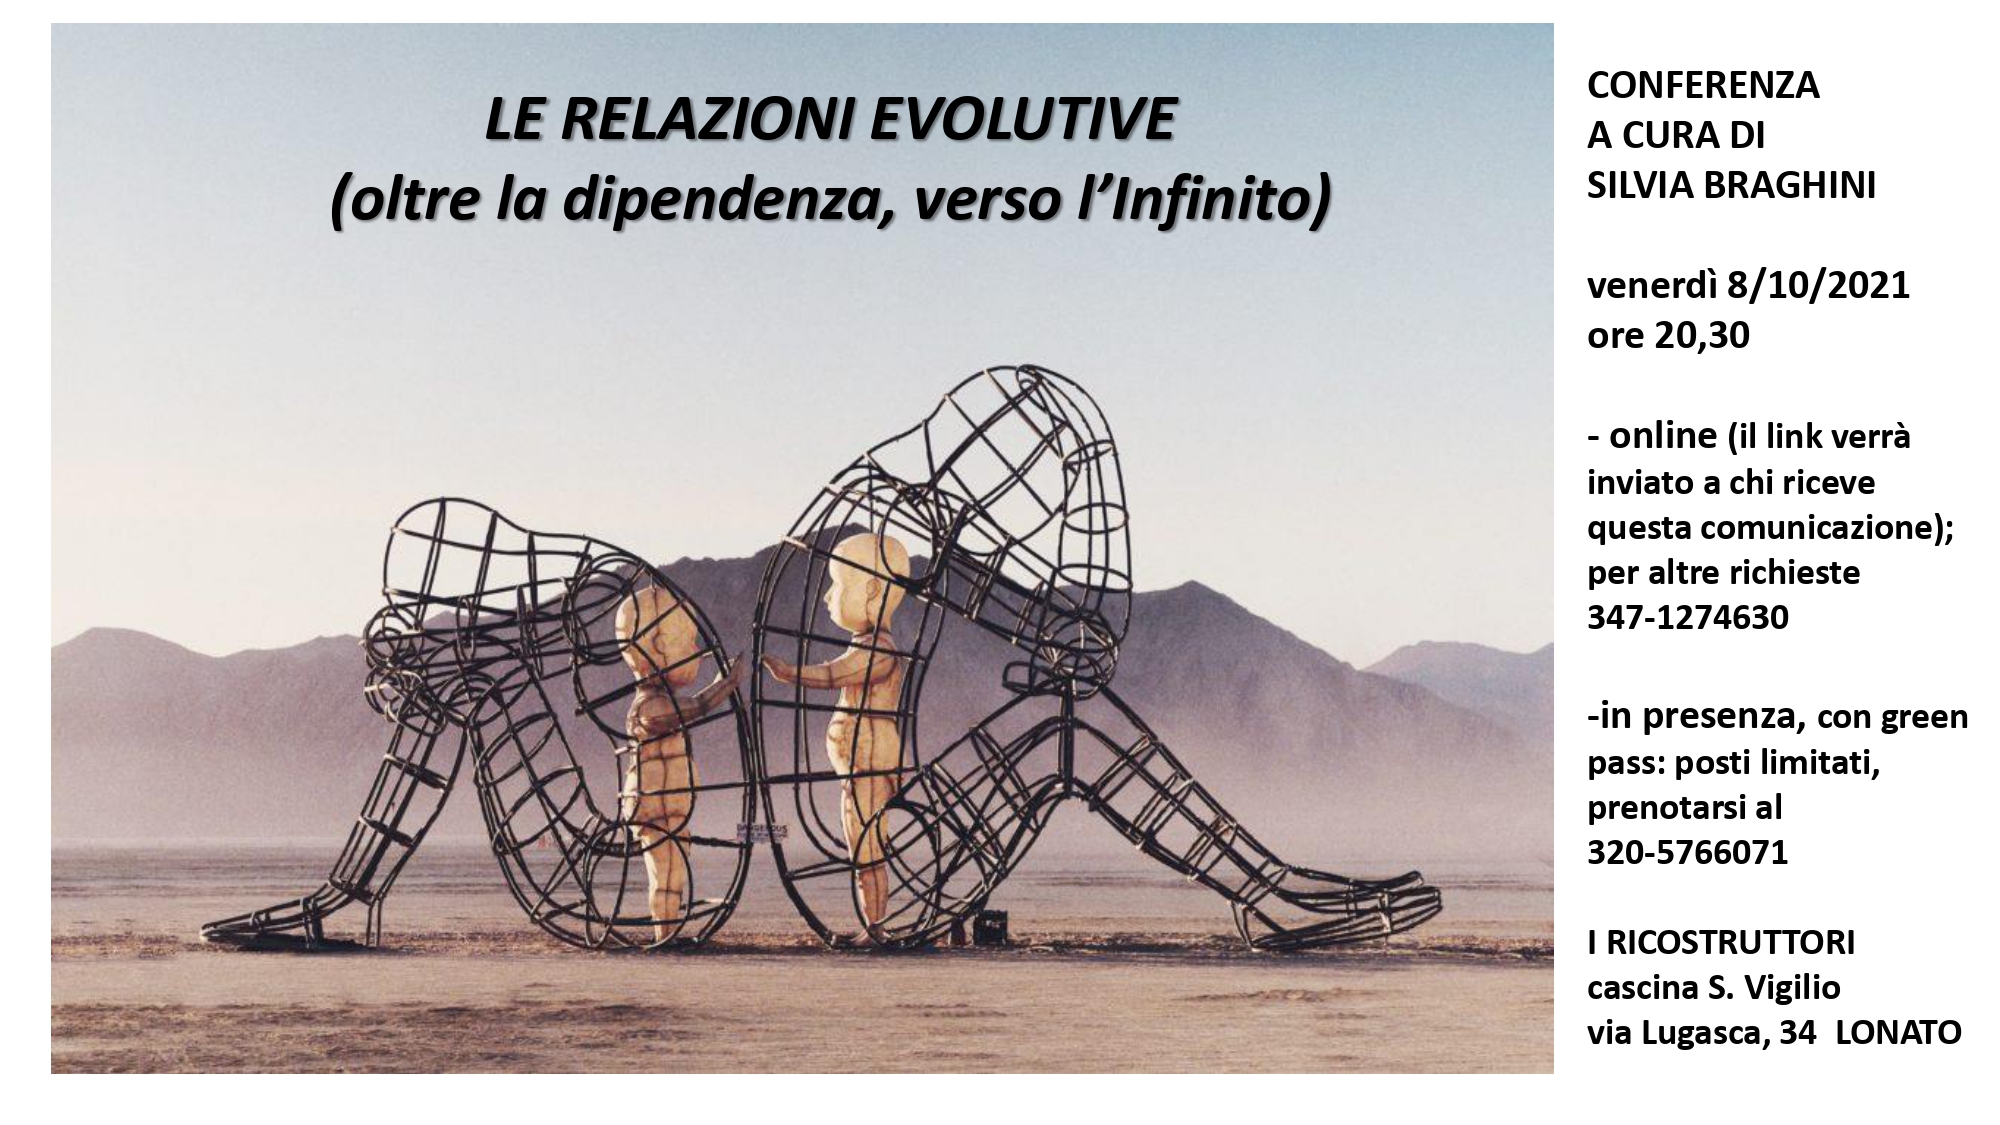 Venerdì 8 ottobre ore 20:30 Conferenza a cura di Silvia Braghini “le relazioni evolutive”